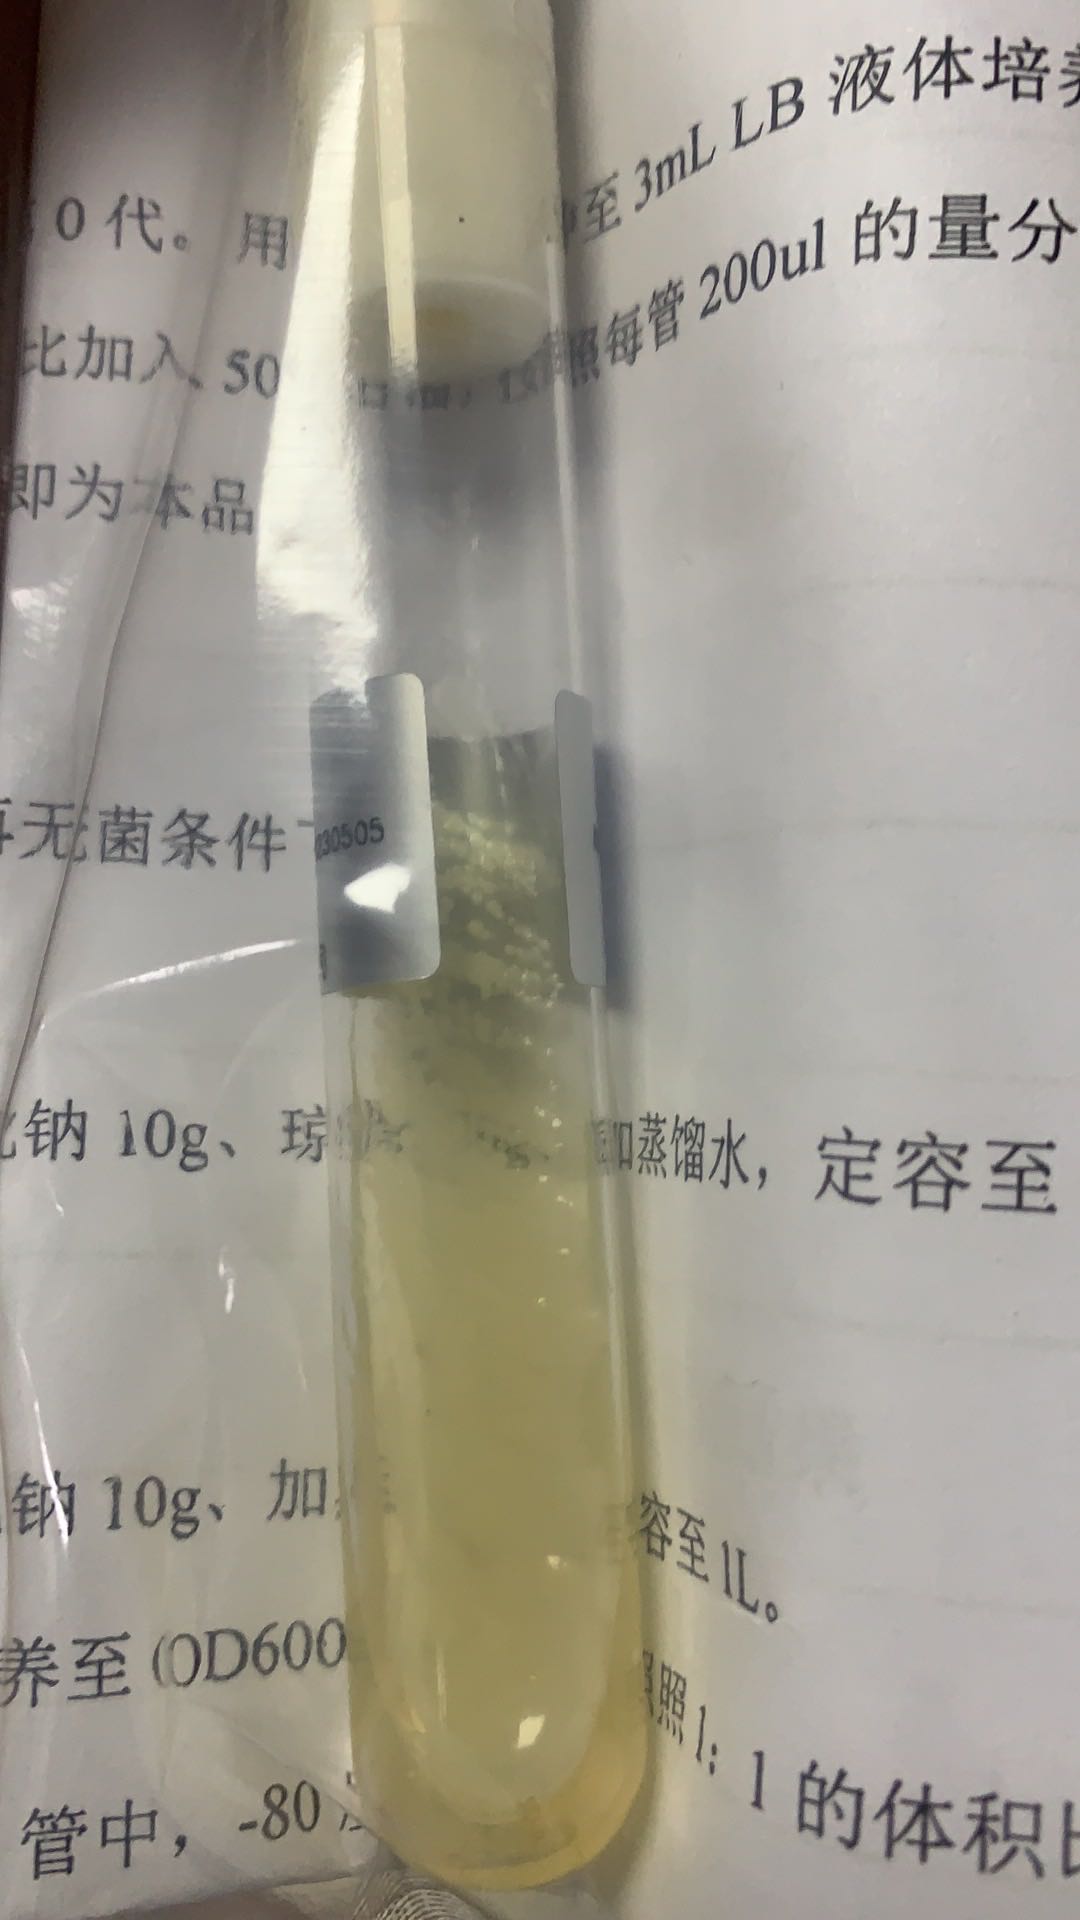 金黄色葡萄球菌ATCC_菌液金黄色葡萄球菌保藏中心_上海晅科生物科技有限公司